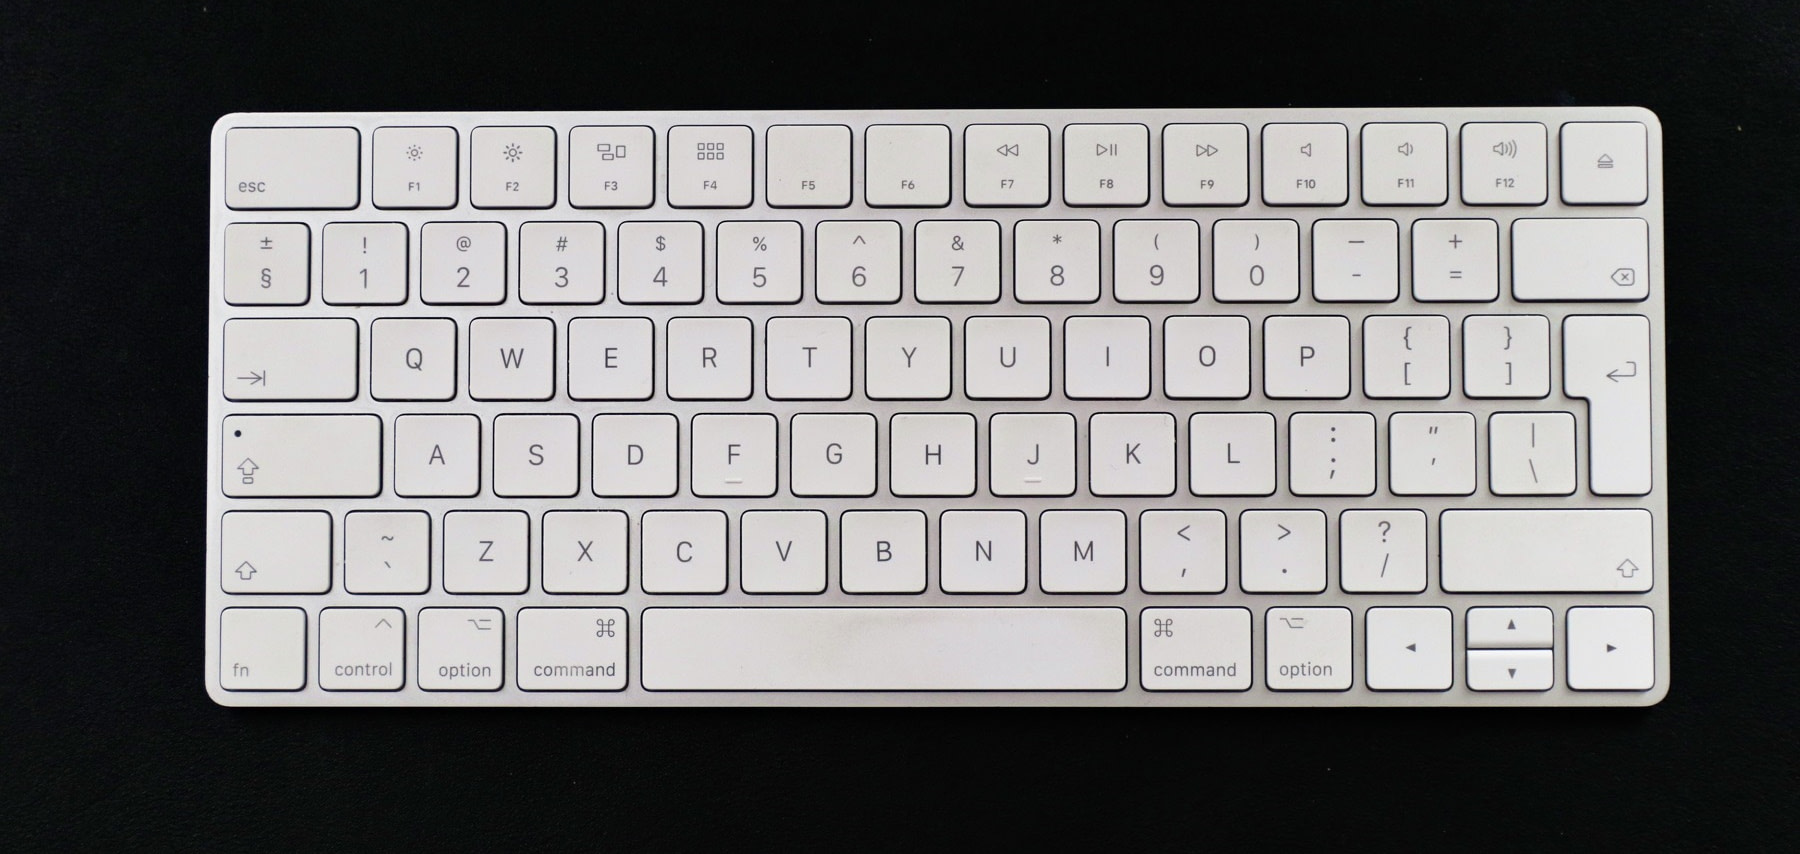 mac like keyboard for windows $40